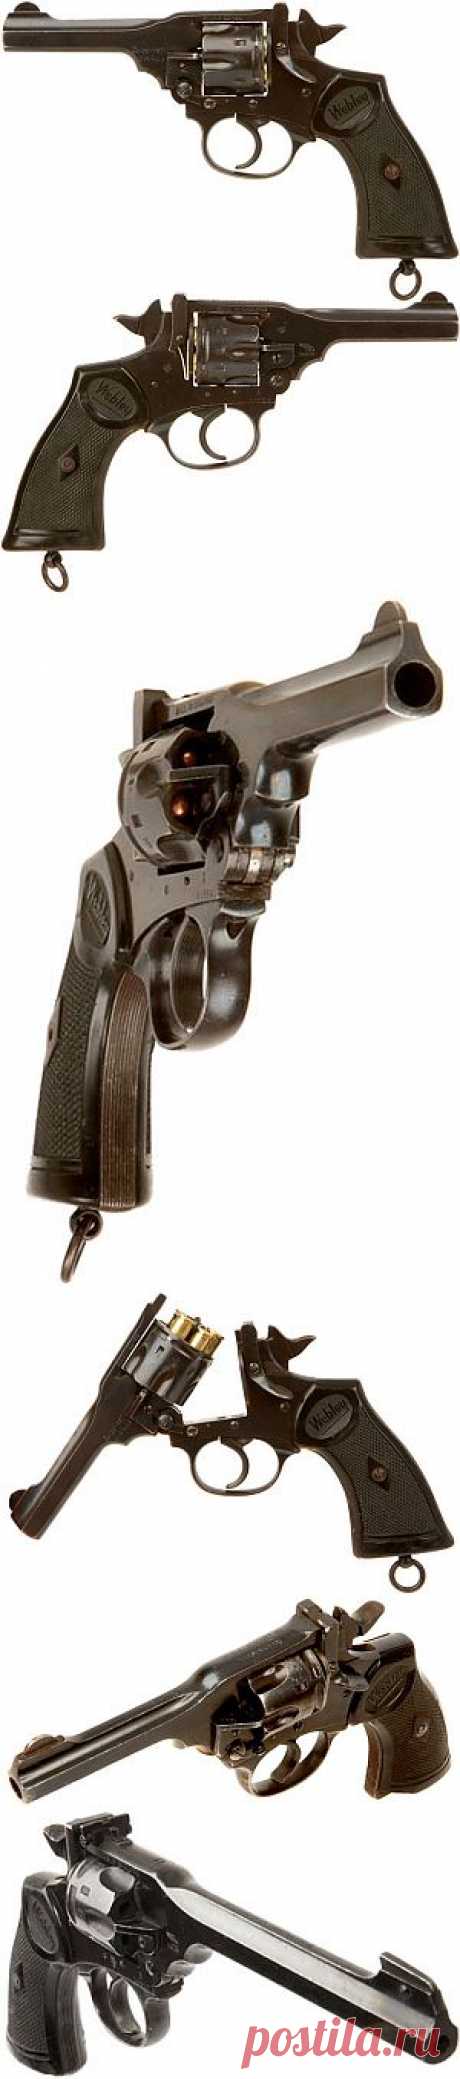 Револьвер Webley .38 Mk IV / Mk IV Target Model - Великобритания - Револьверы - Оружие - Современная энциклопедия оружия и боеприпасов (стрелковое огнестрельное оружие, боеприпасы и снаряжение)